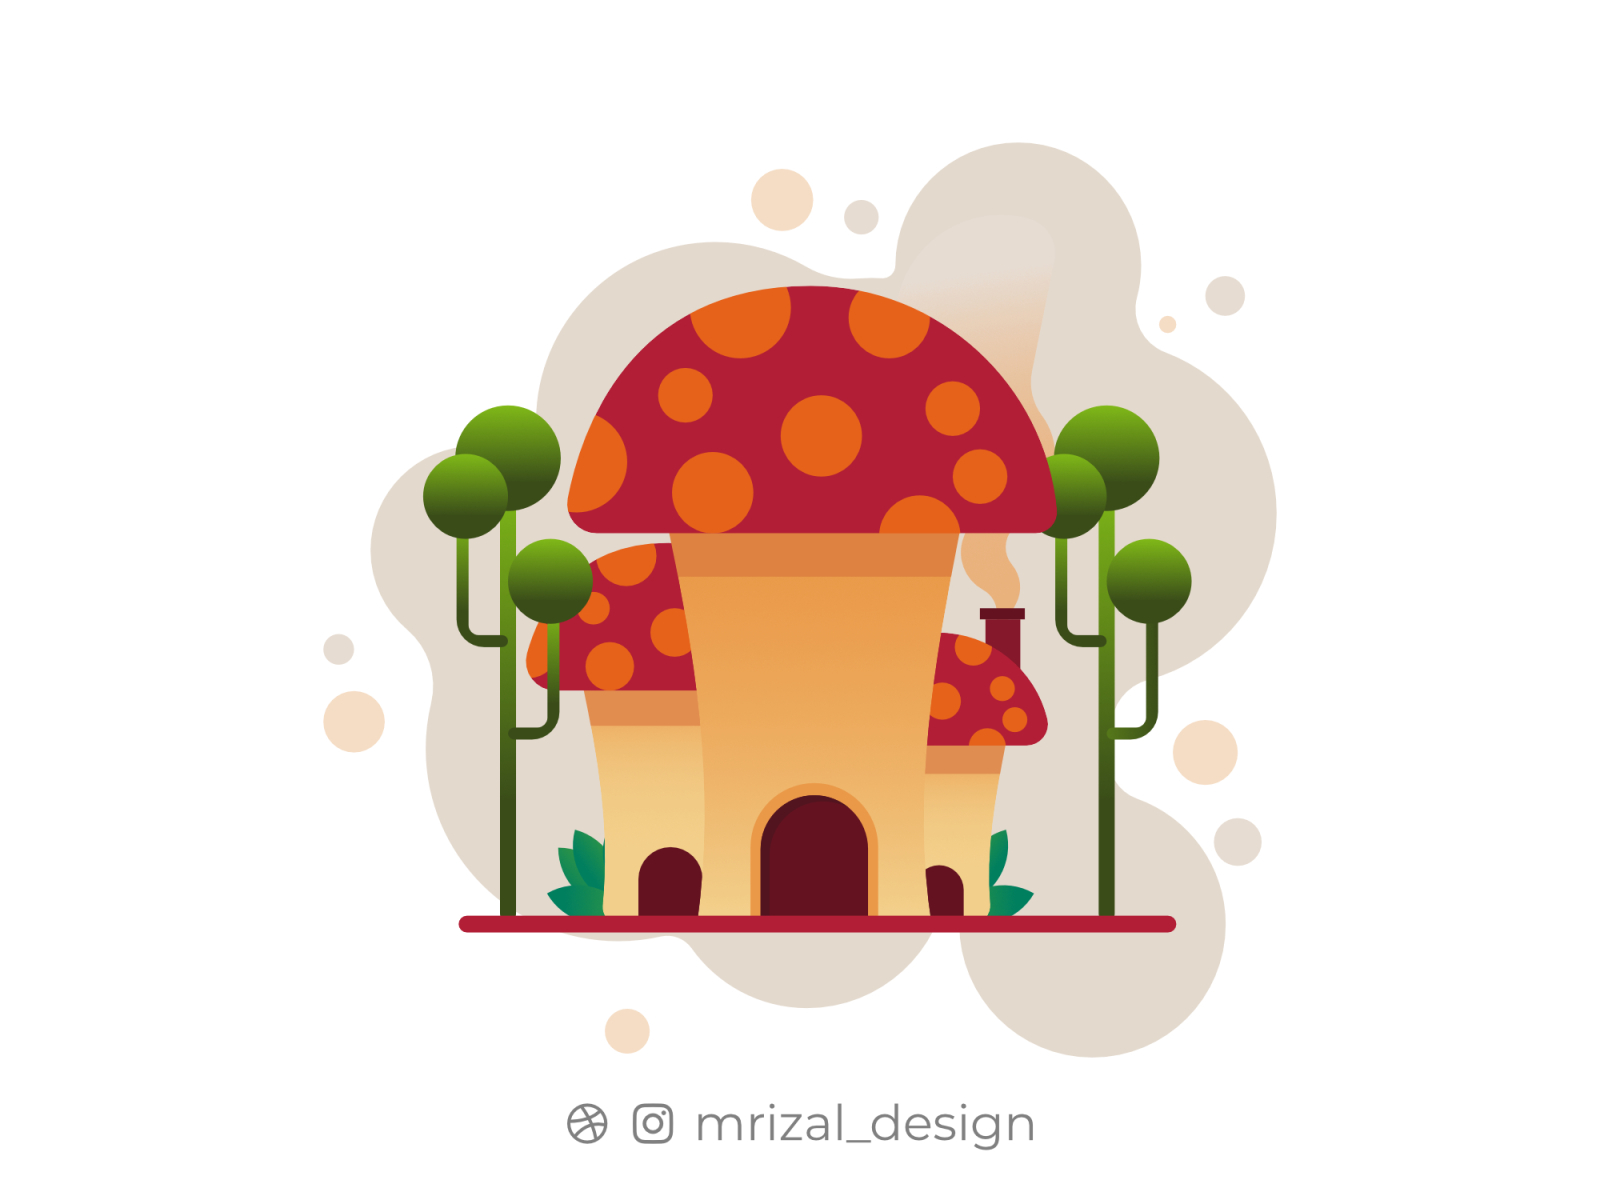 Mushroom House by Muhamad Rizaludin on Dribbble